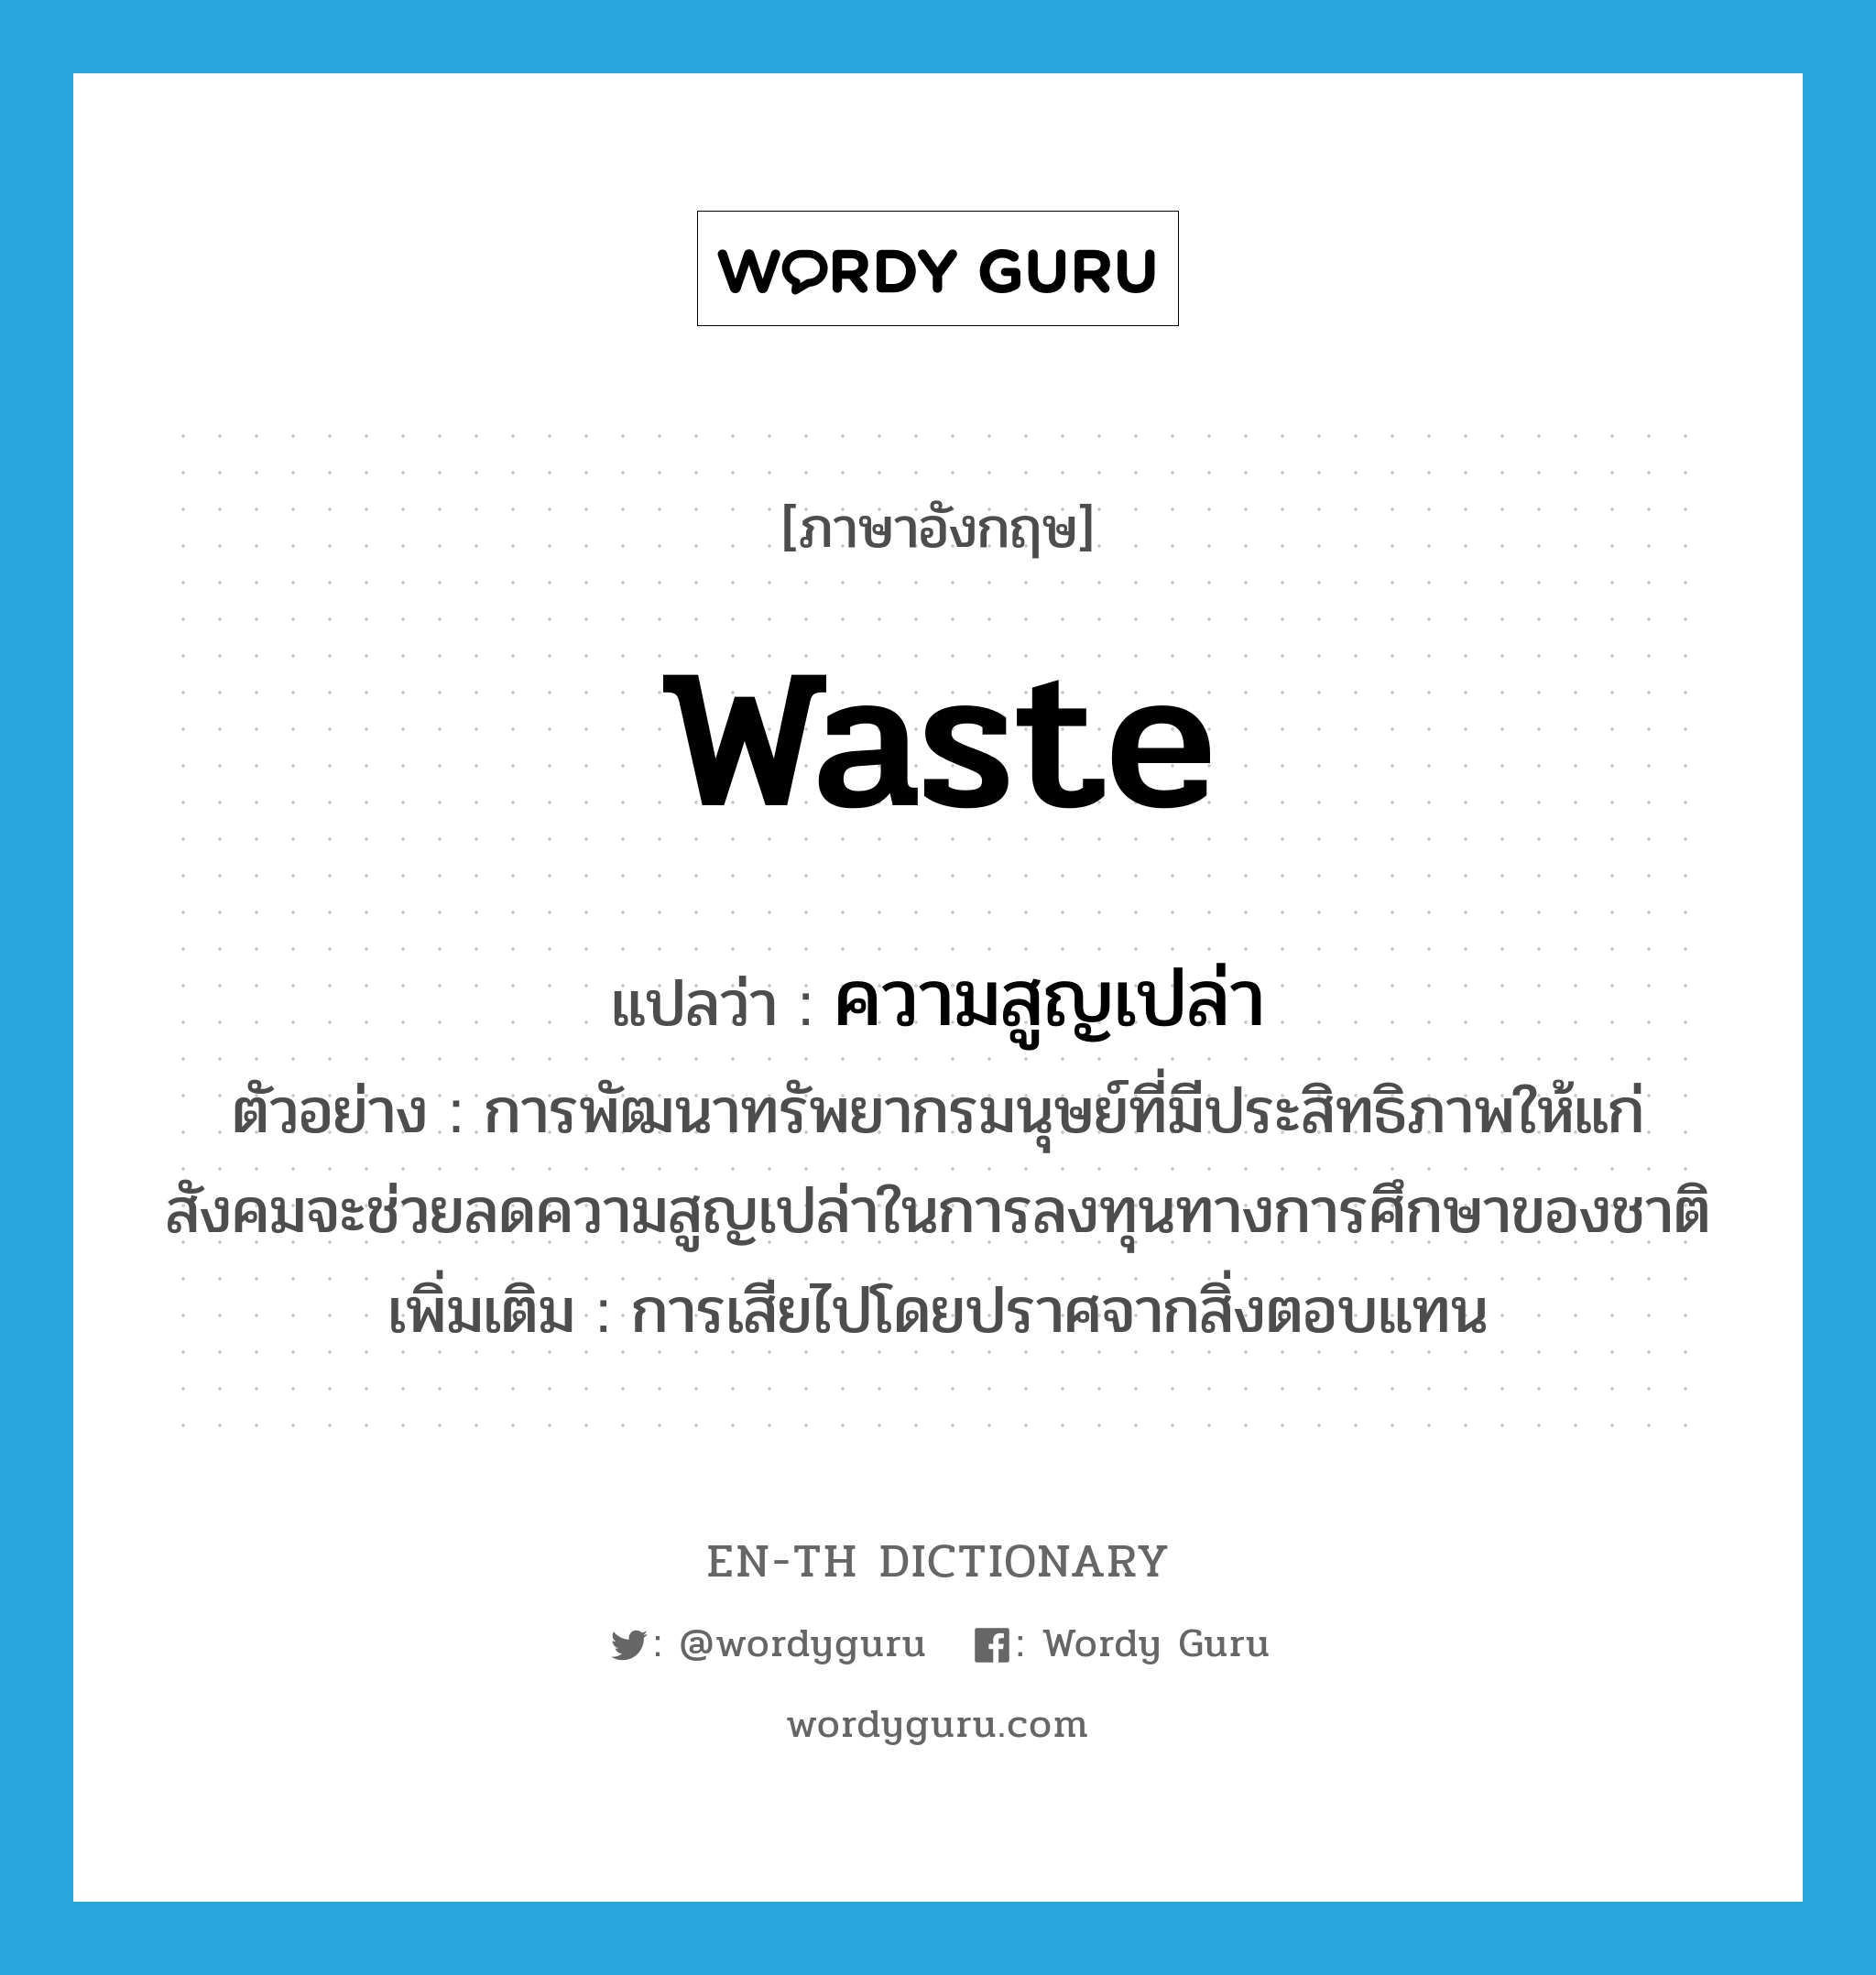 waste แปลว่า?, คำศัพท์ภาษาอังกฤษ waste แปลว่า ความสูญเปล่า ประเภท N ตัวอย่าง การพัฒนาทรัพยากรมนุษย์ที่มีประสิทธิภาพให้แก่สังคมจะช่วยลดความสูญเปล่าในการลงทุนทางการศึกษาของชาติ เพิ่มเติม การเสียไปโดยปราศจากสิ่งตอบแทน หมวด N